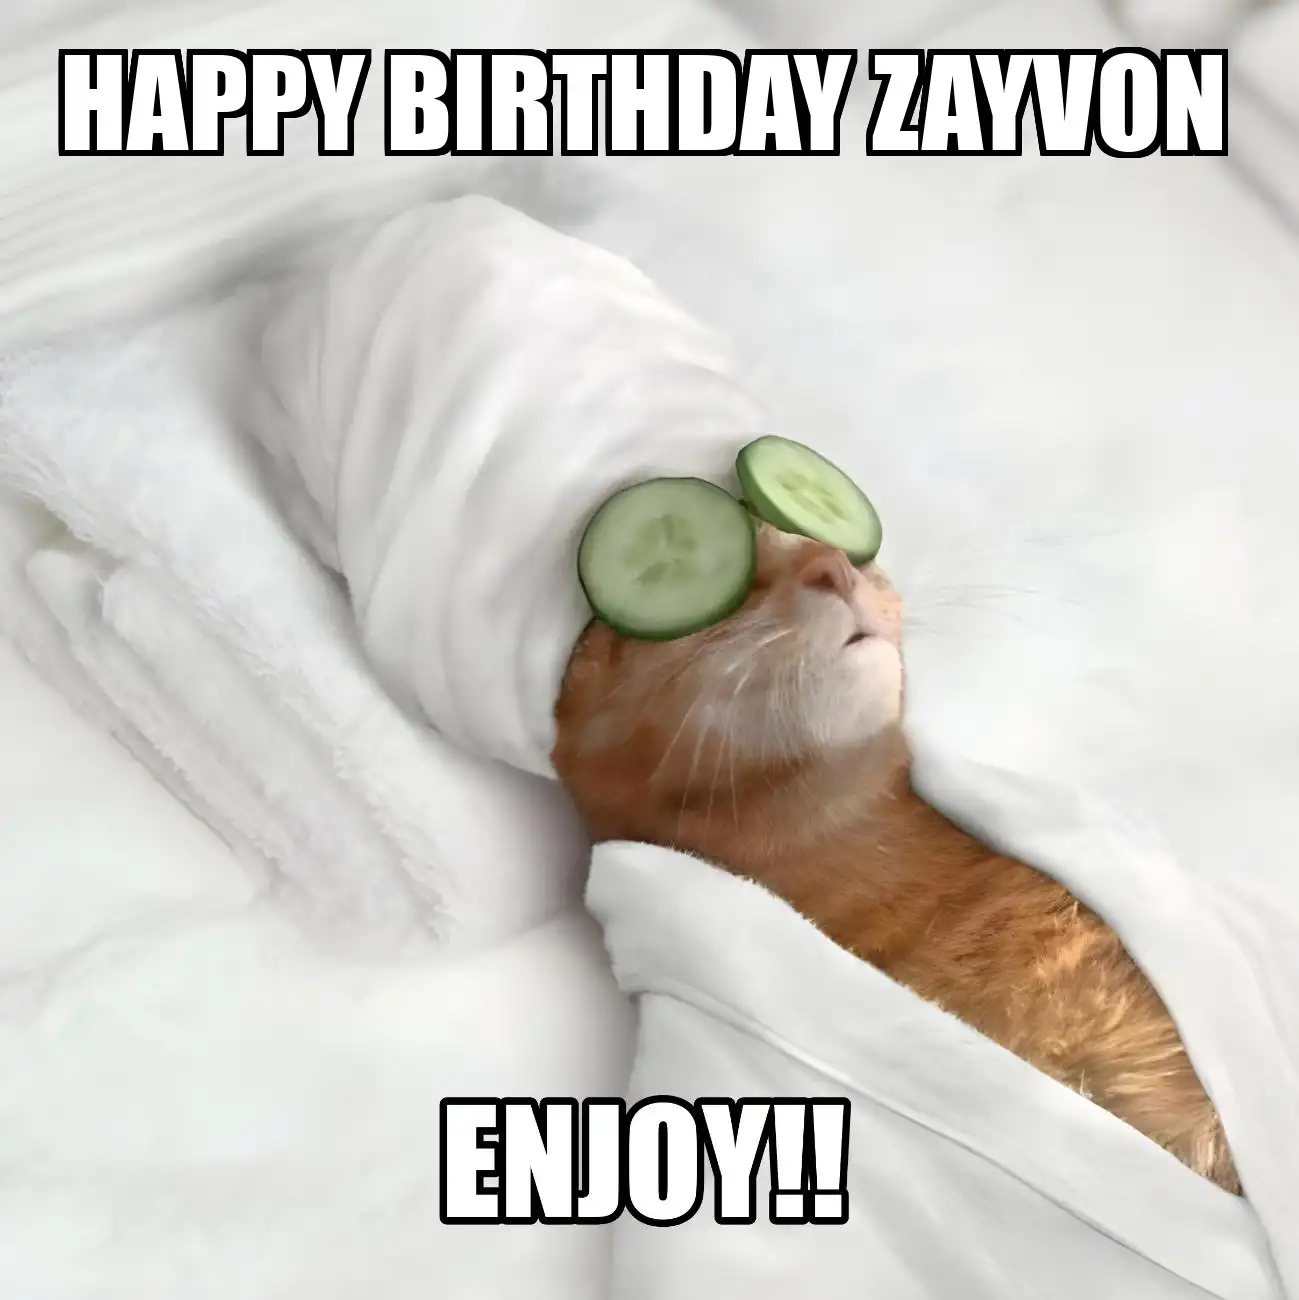 Happy Birthday Zayvon Enjoy Cat Meme